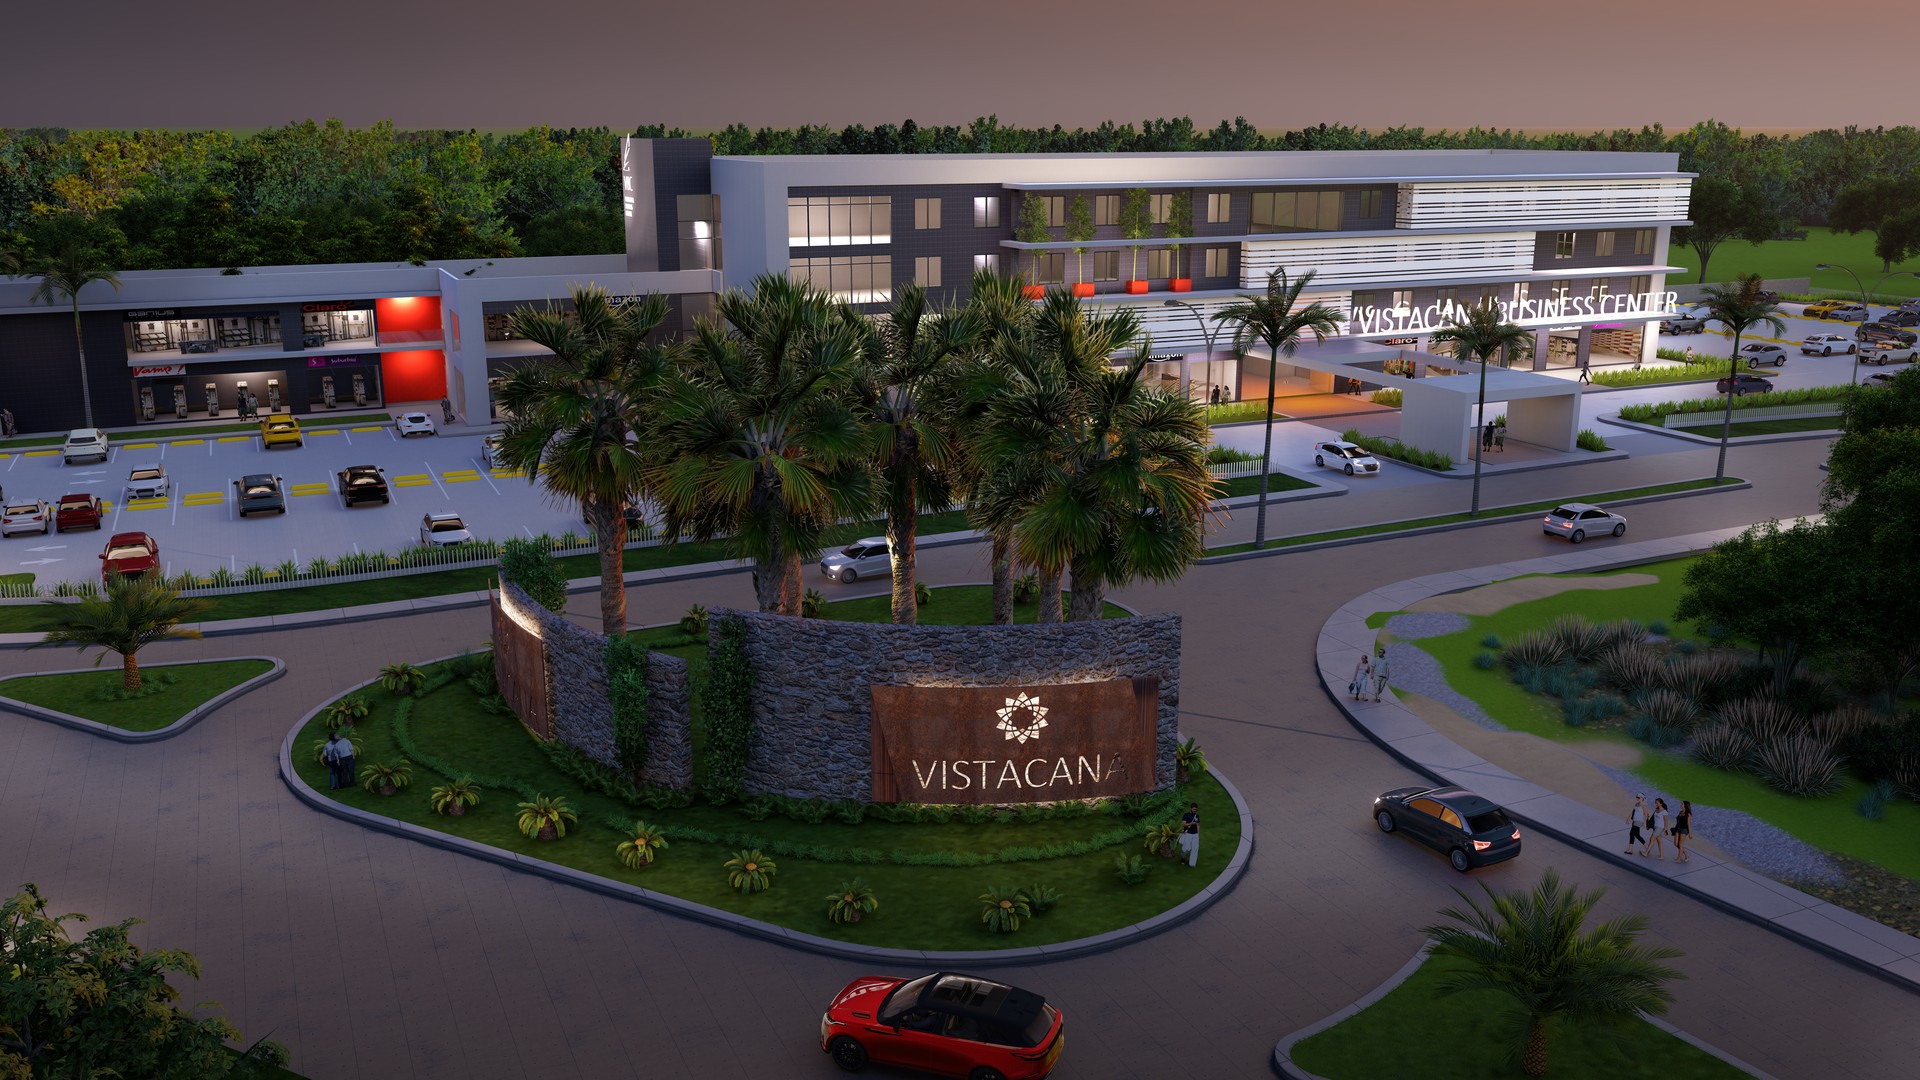 oficinas y locales comerciales - Venta de oficinas comerciales en Vista Cana